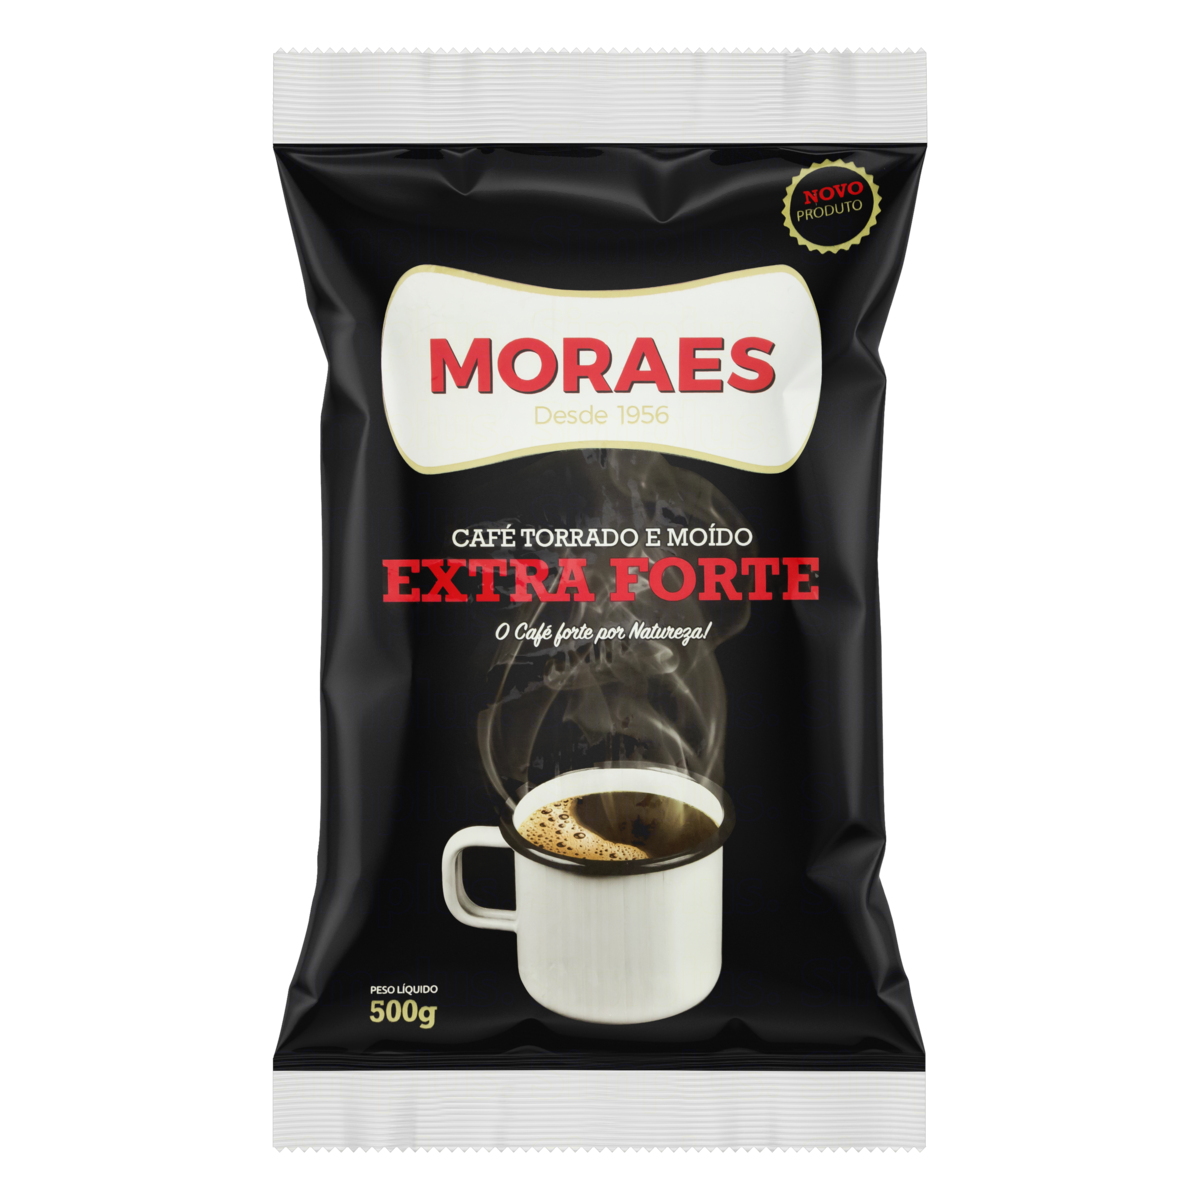 7896235100218 - CAFÉ TORRADO E MOÍDO EXTRAFORTE MORAES PACOTE 500G